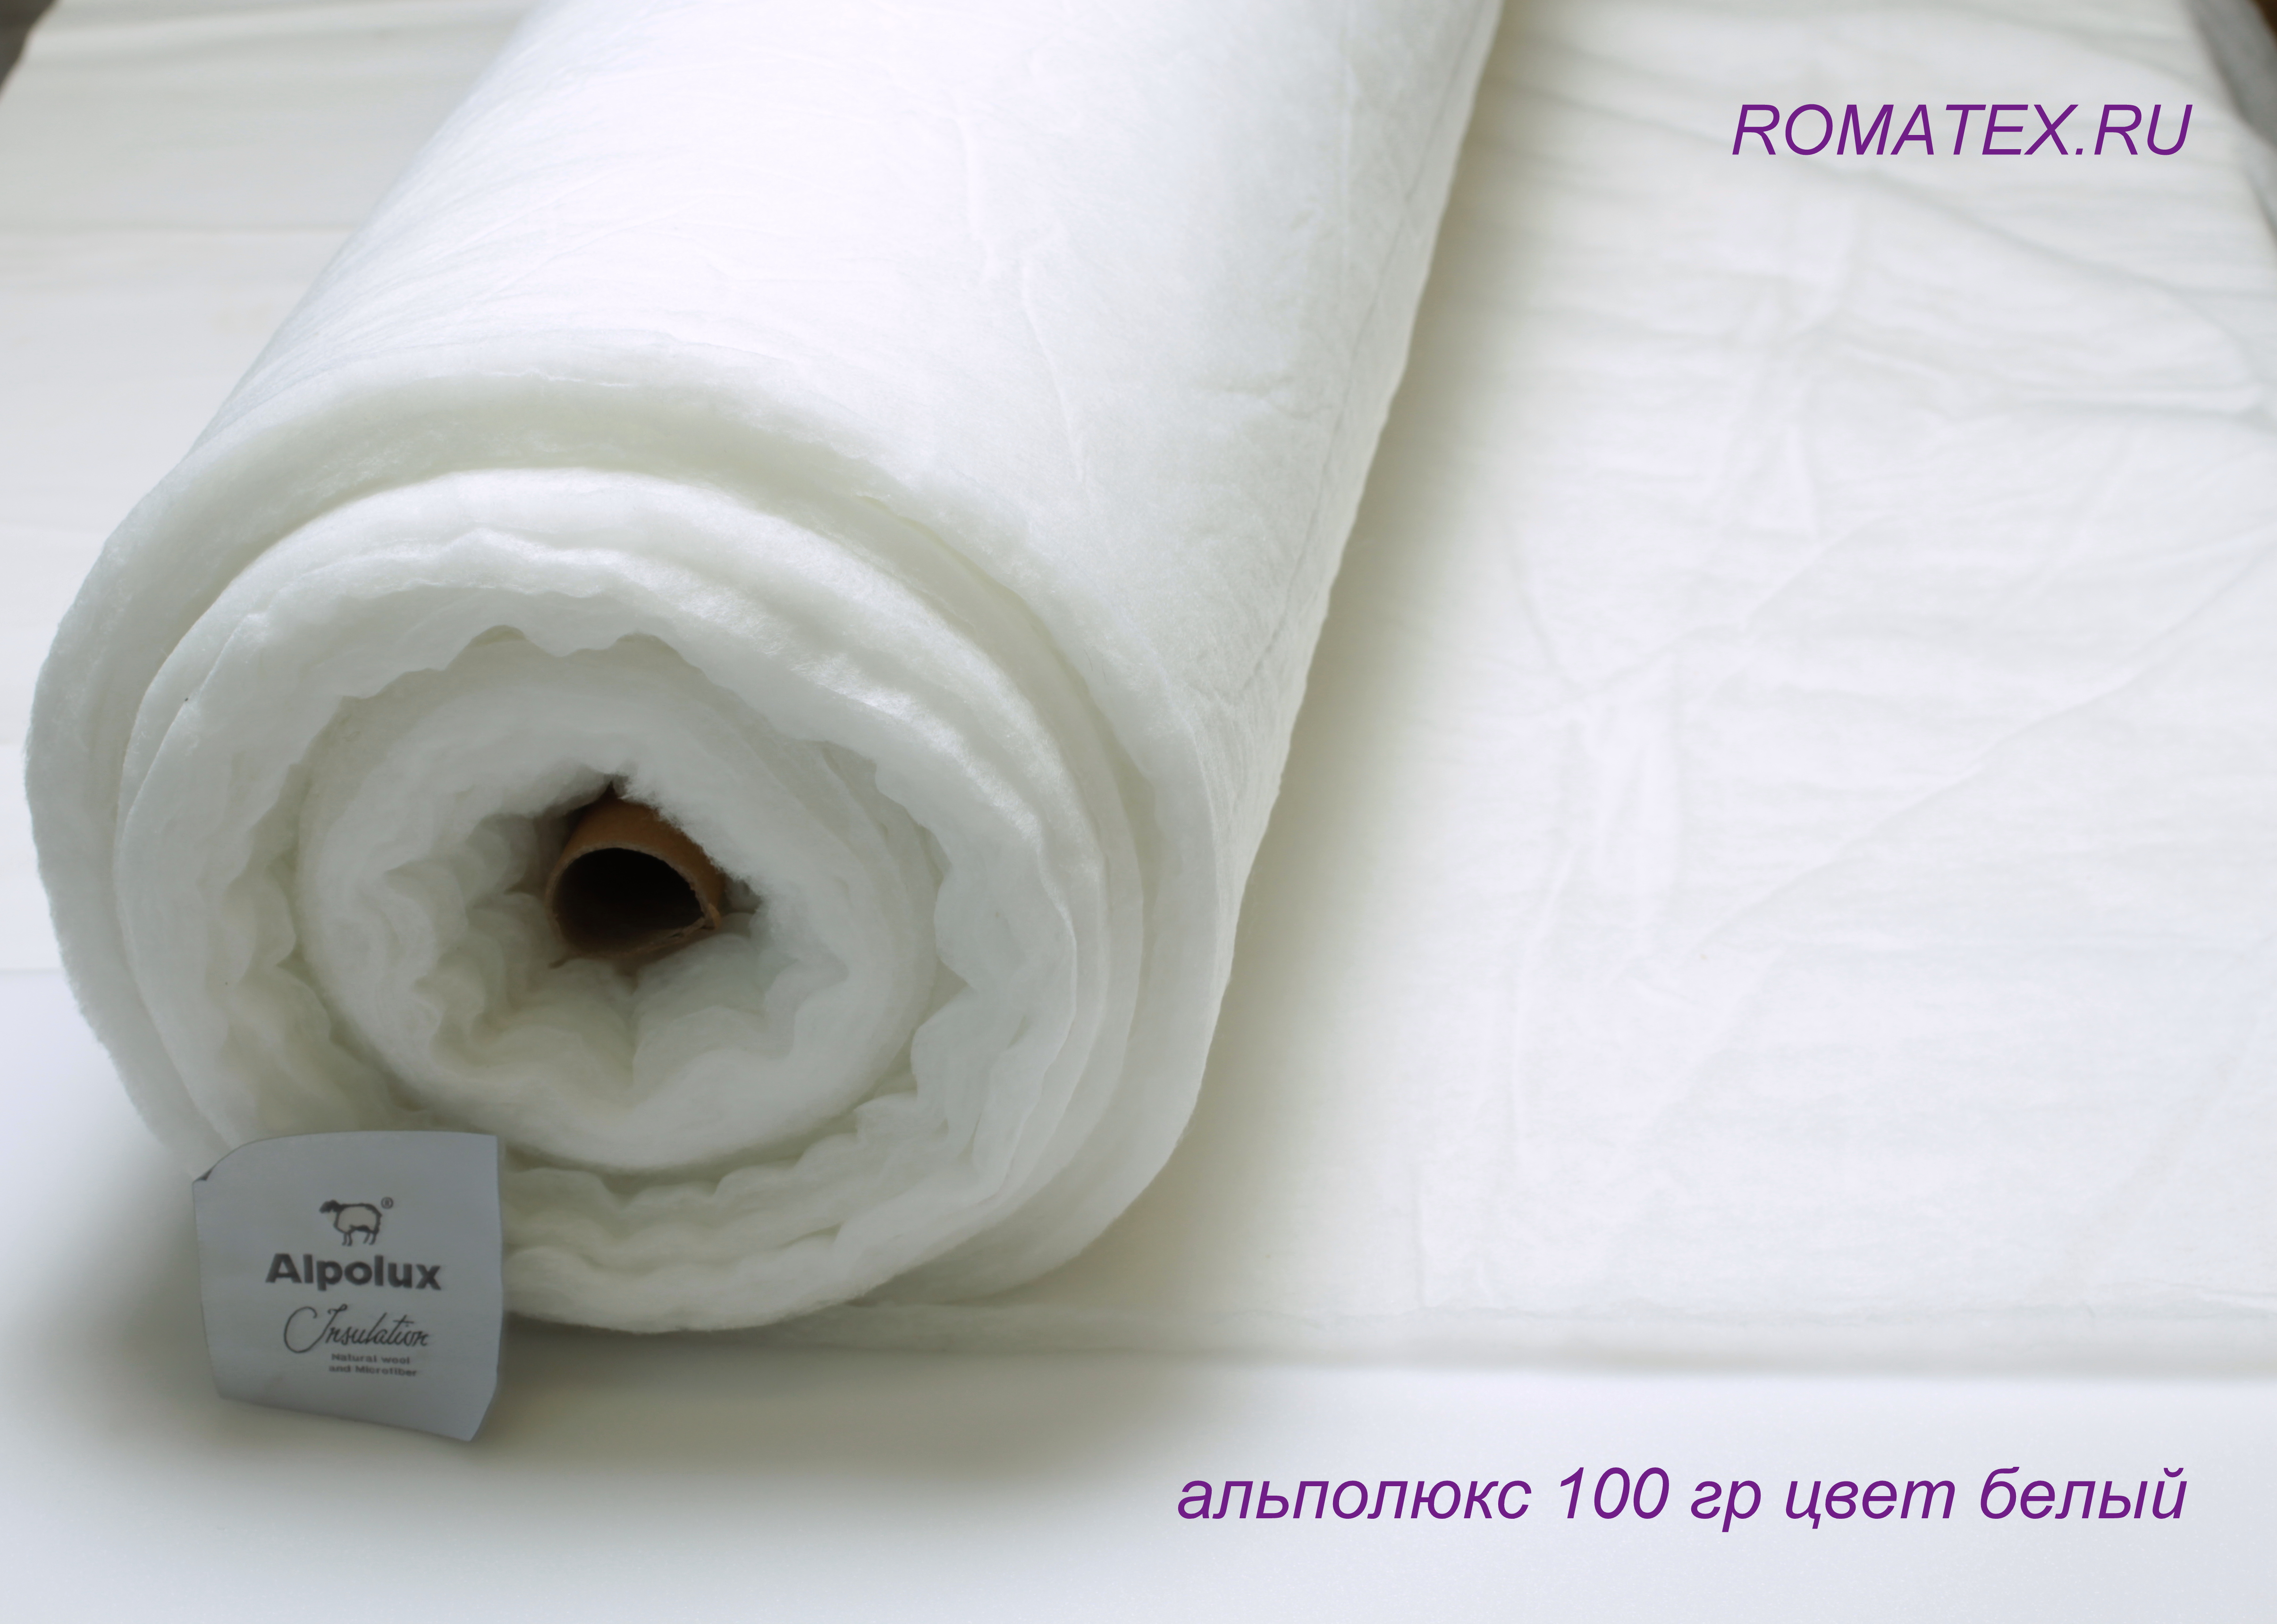 Ткань Утеплитель Альполюкс плотность 100гр, белый - купить в магазинеРоматекс